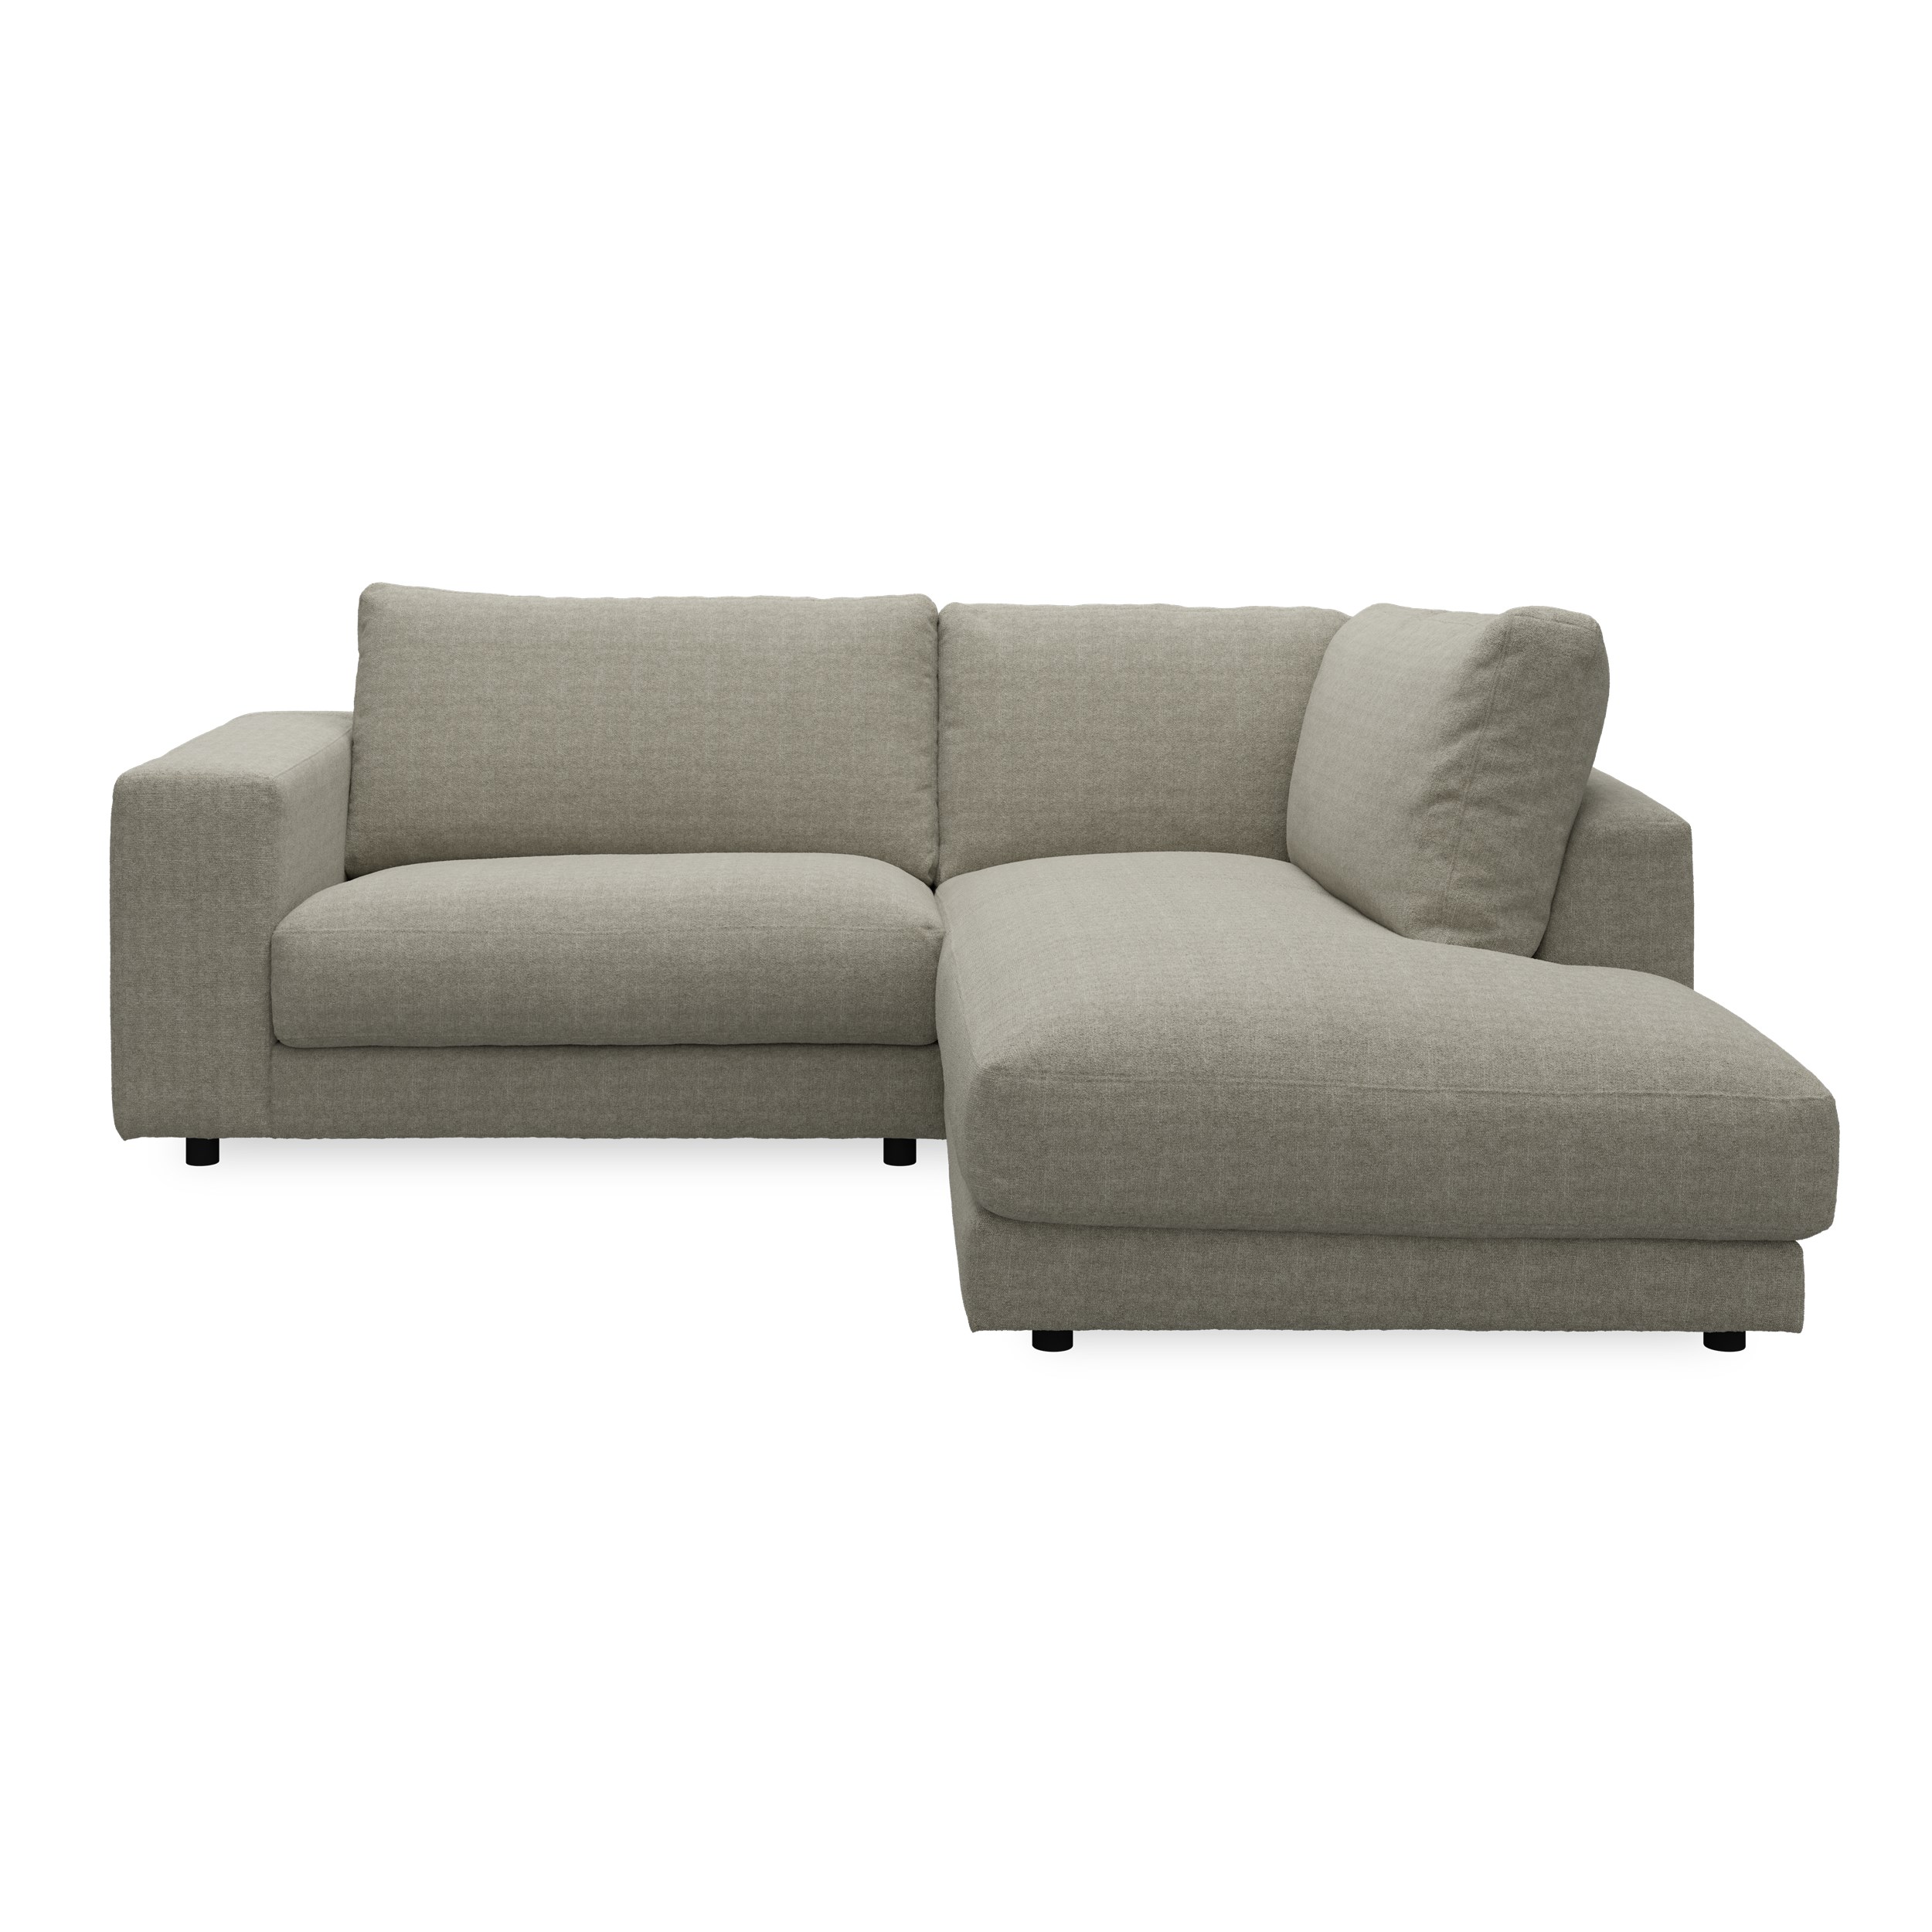 Bennent högervänd soffa med divan - Yelda Taupe klädsel, ben i svart plast och S:skum/fib/din/sili R:Dun/skum